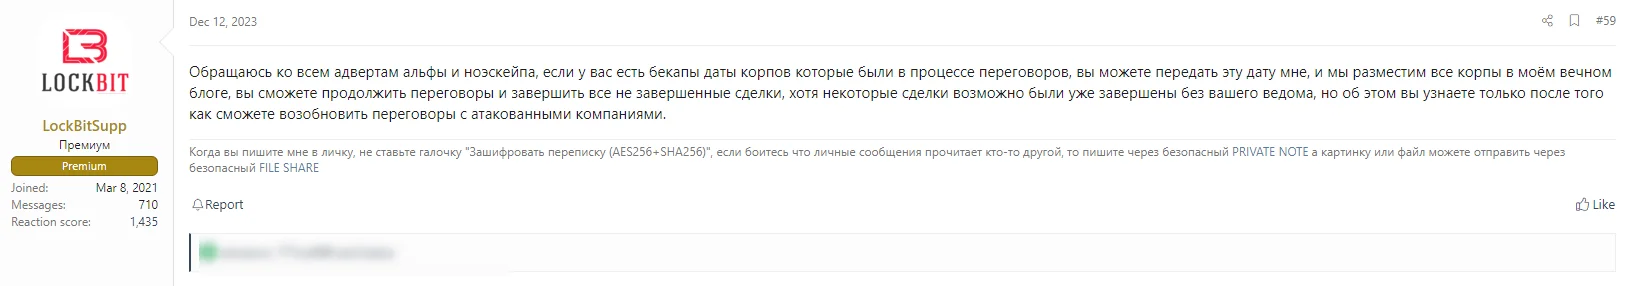 Fig. 7. LockBit’s comment in the Russian-speaking hacker forum